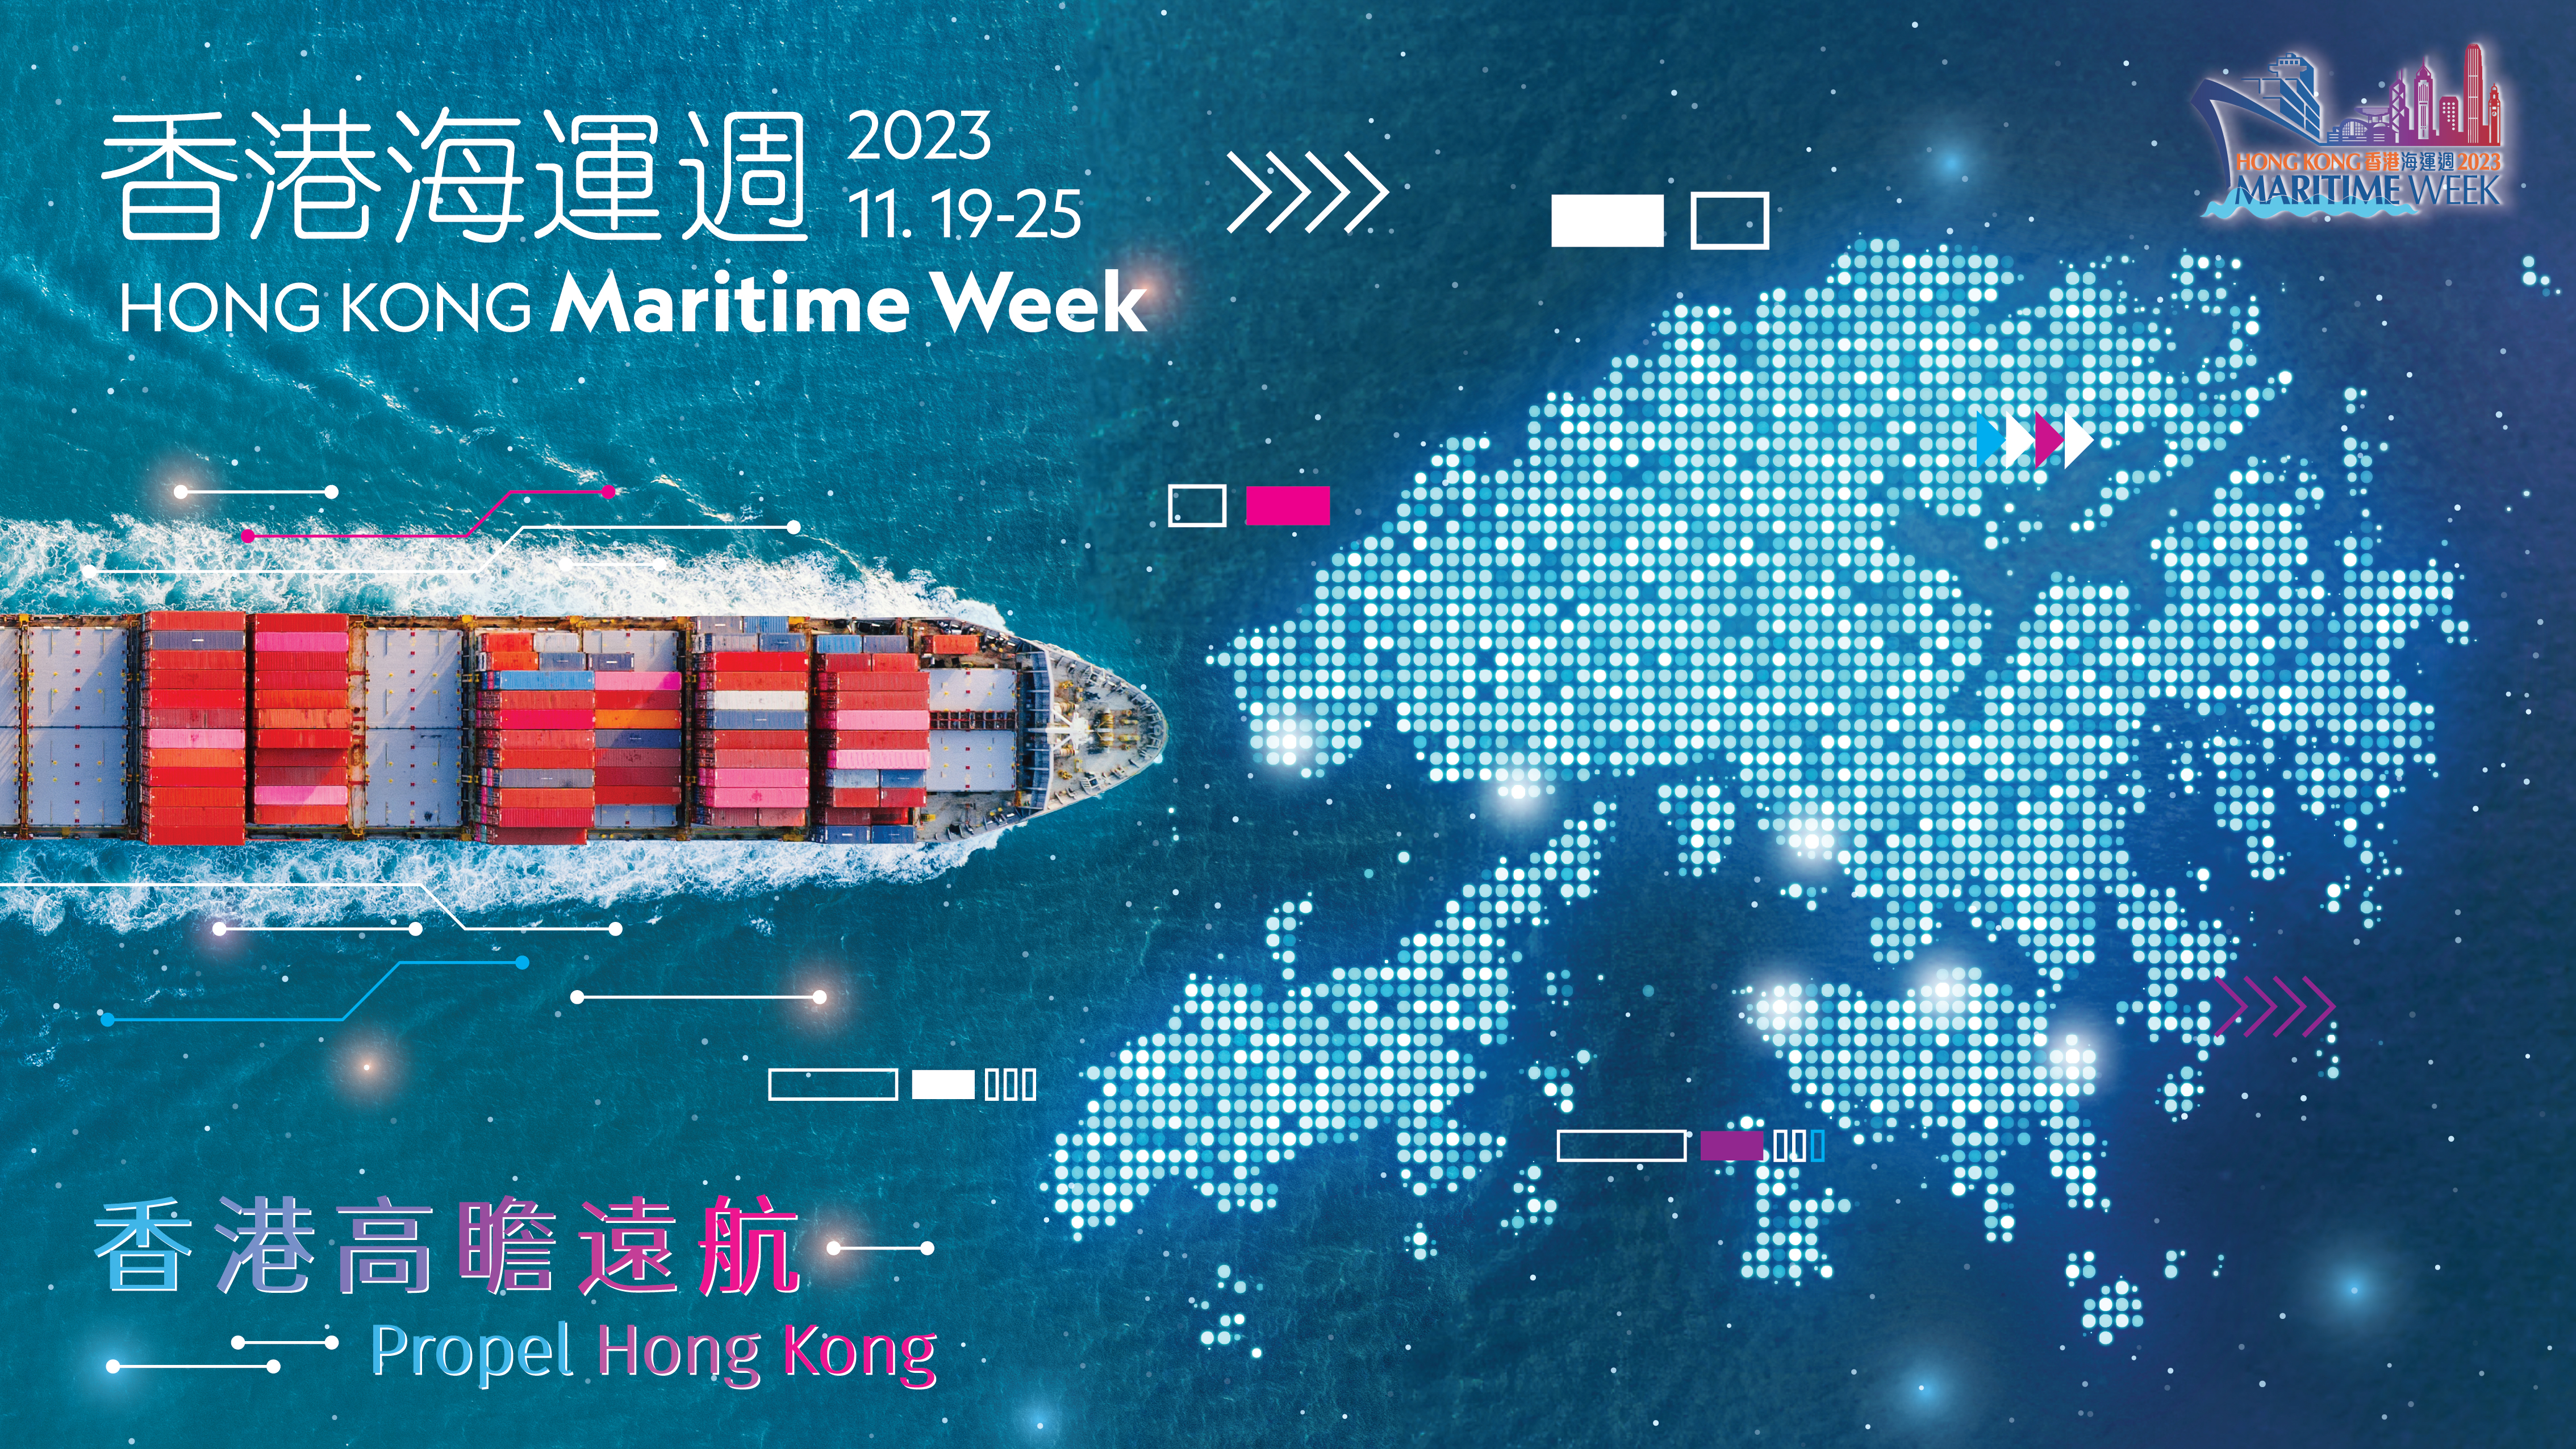 香港海運週2023 - 開幕典禮暨第三屆世界航商大會 (只有英文)